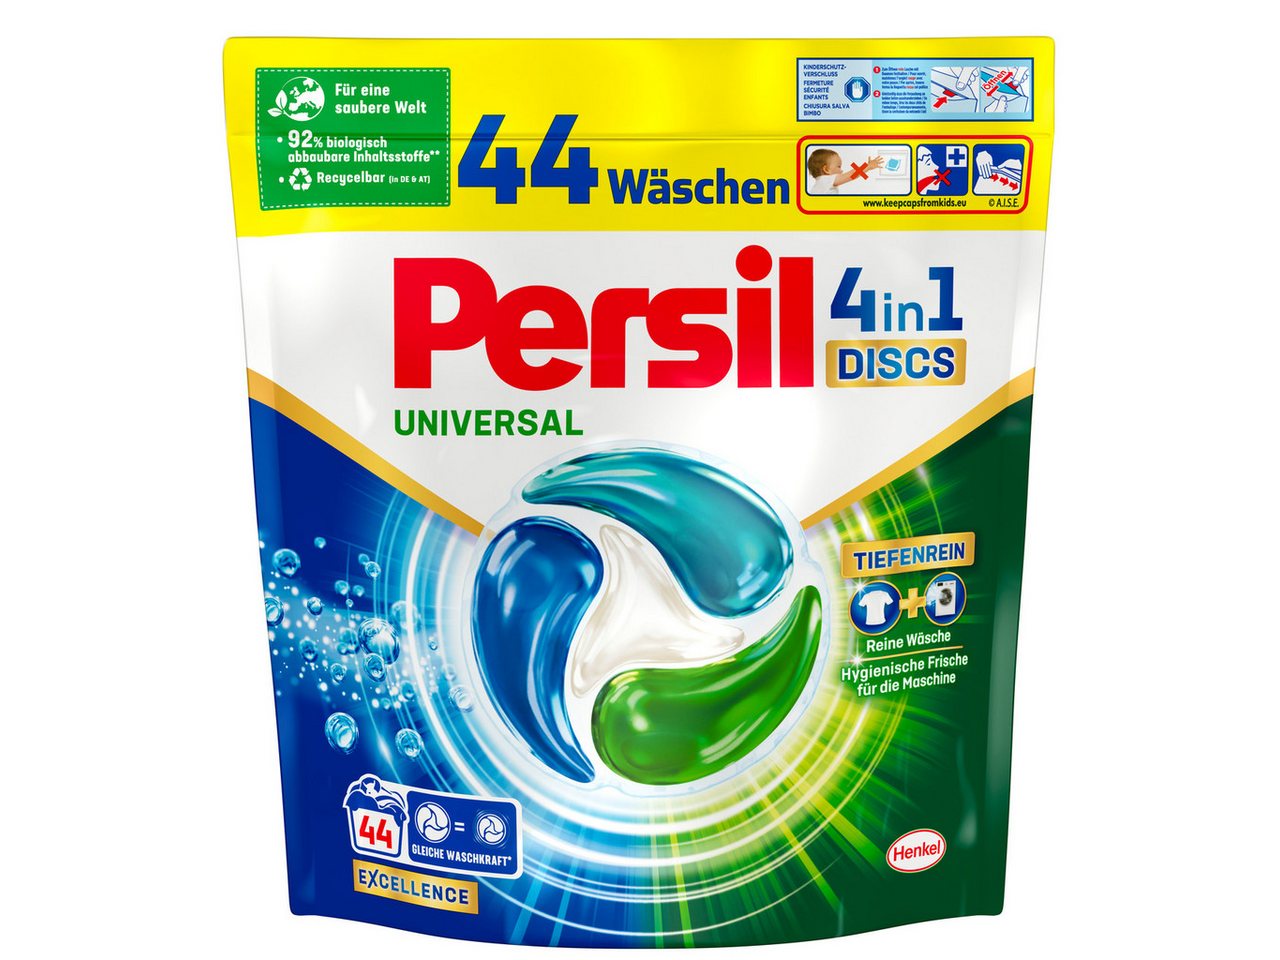 Persil Universal 4-in-1 Discs 44 WL Vollwaschmittel (44-St. 748g mit Tiefenrein Technologie) von Persil